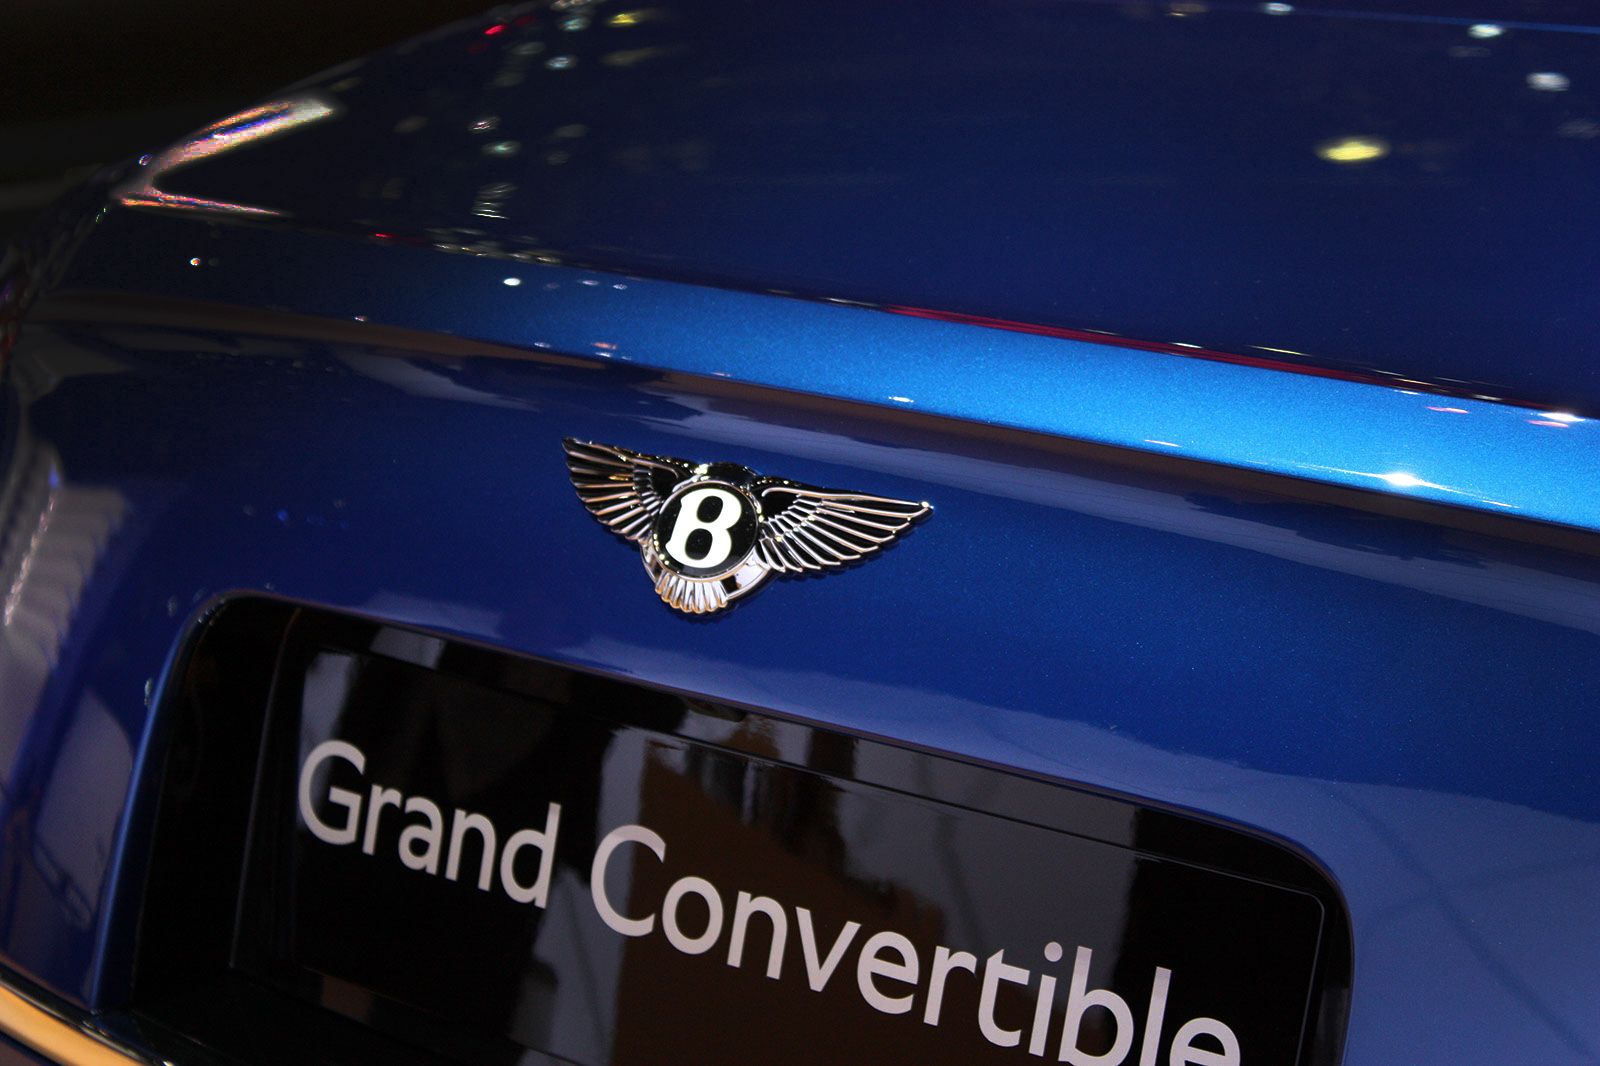 2015 Bentley Grand Convertible Concept